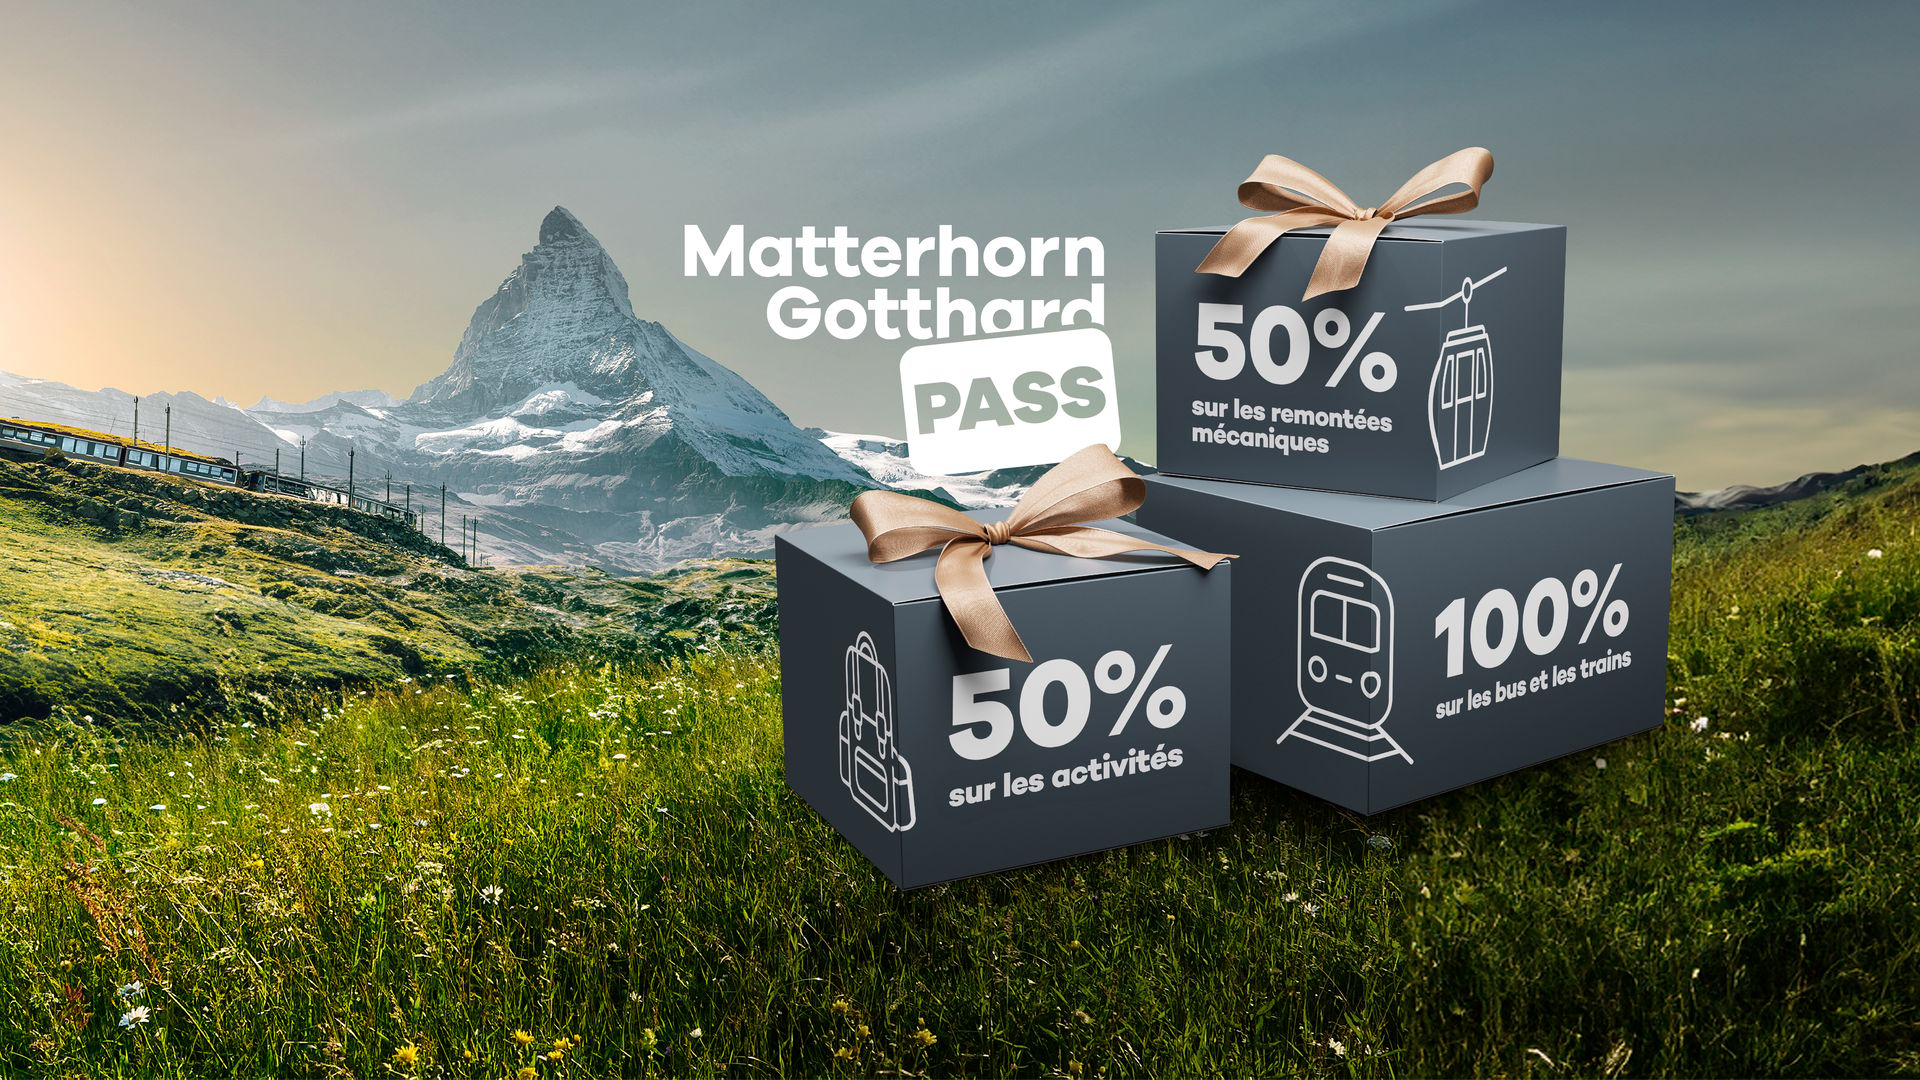 Matterhorn Gotthard Pass Visual